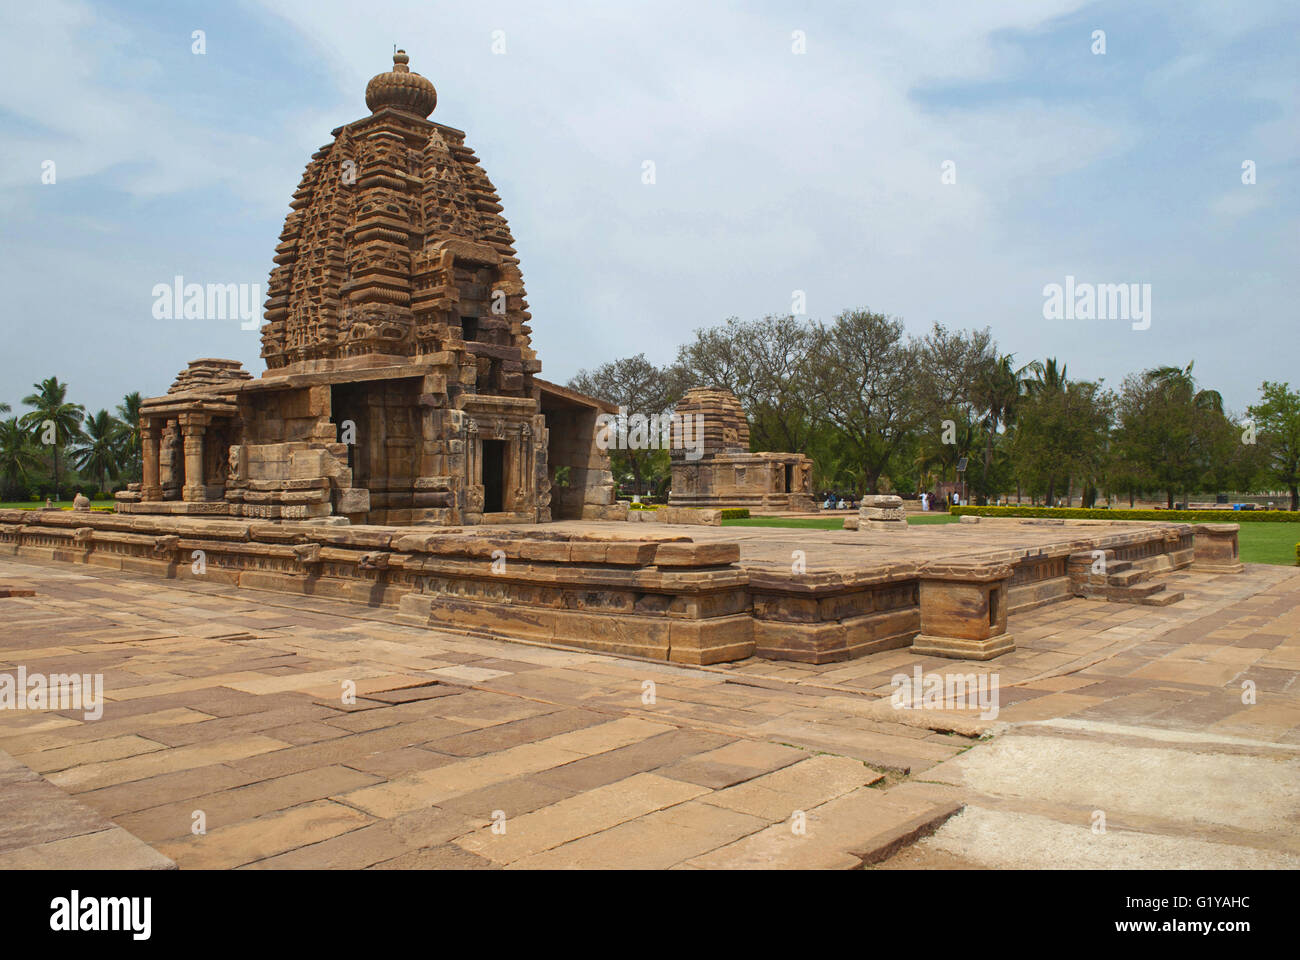 Vista completa del templo, Pattadakal Galaganatha templo complejo, Pattadakal, Karnataka, India. Kadasiddhesvara templo es visto en el fondo Foto de stock